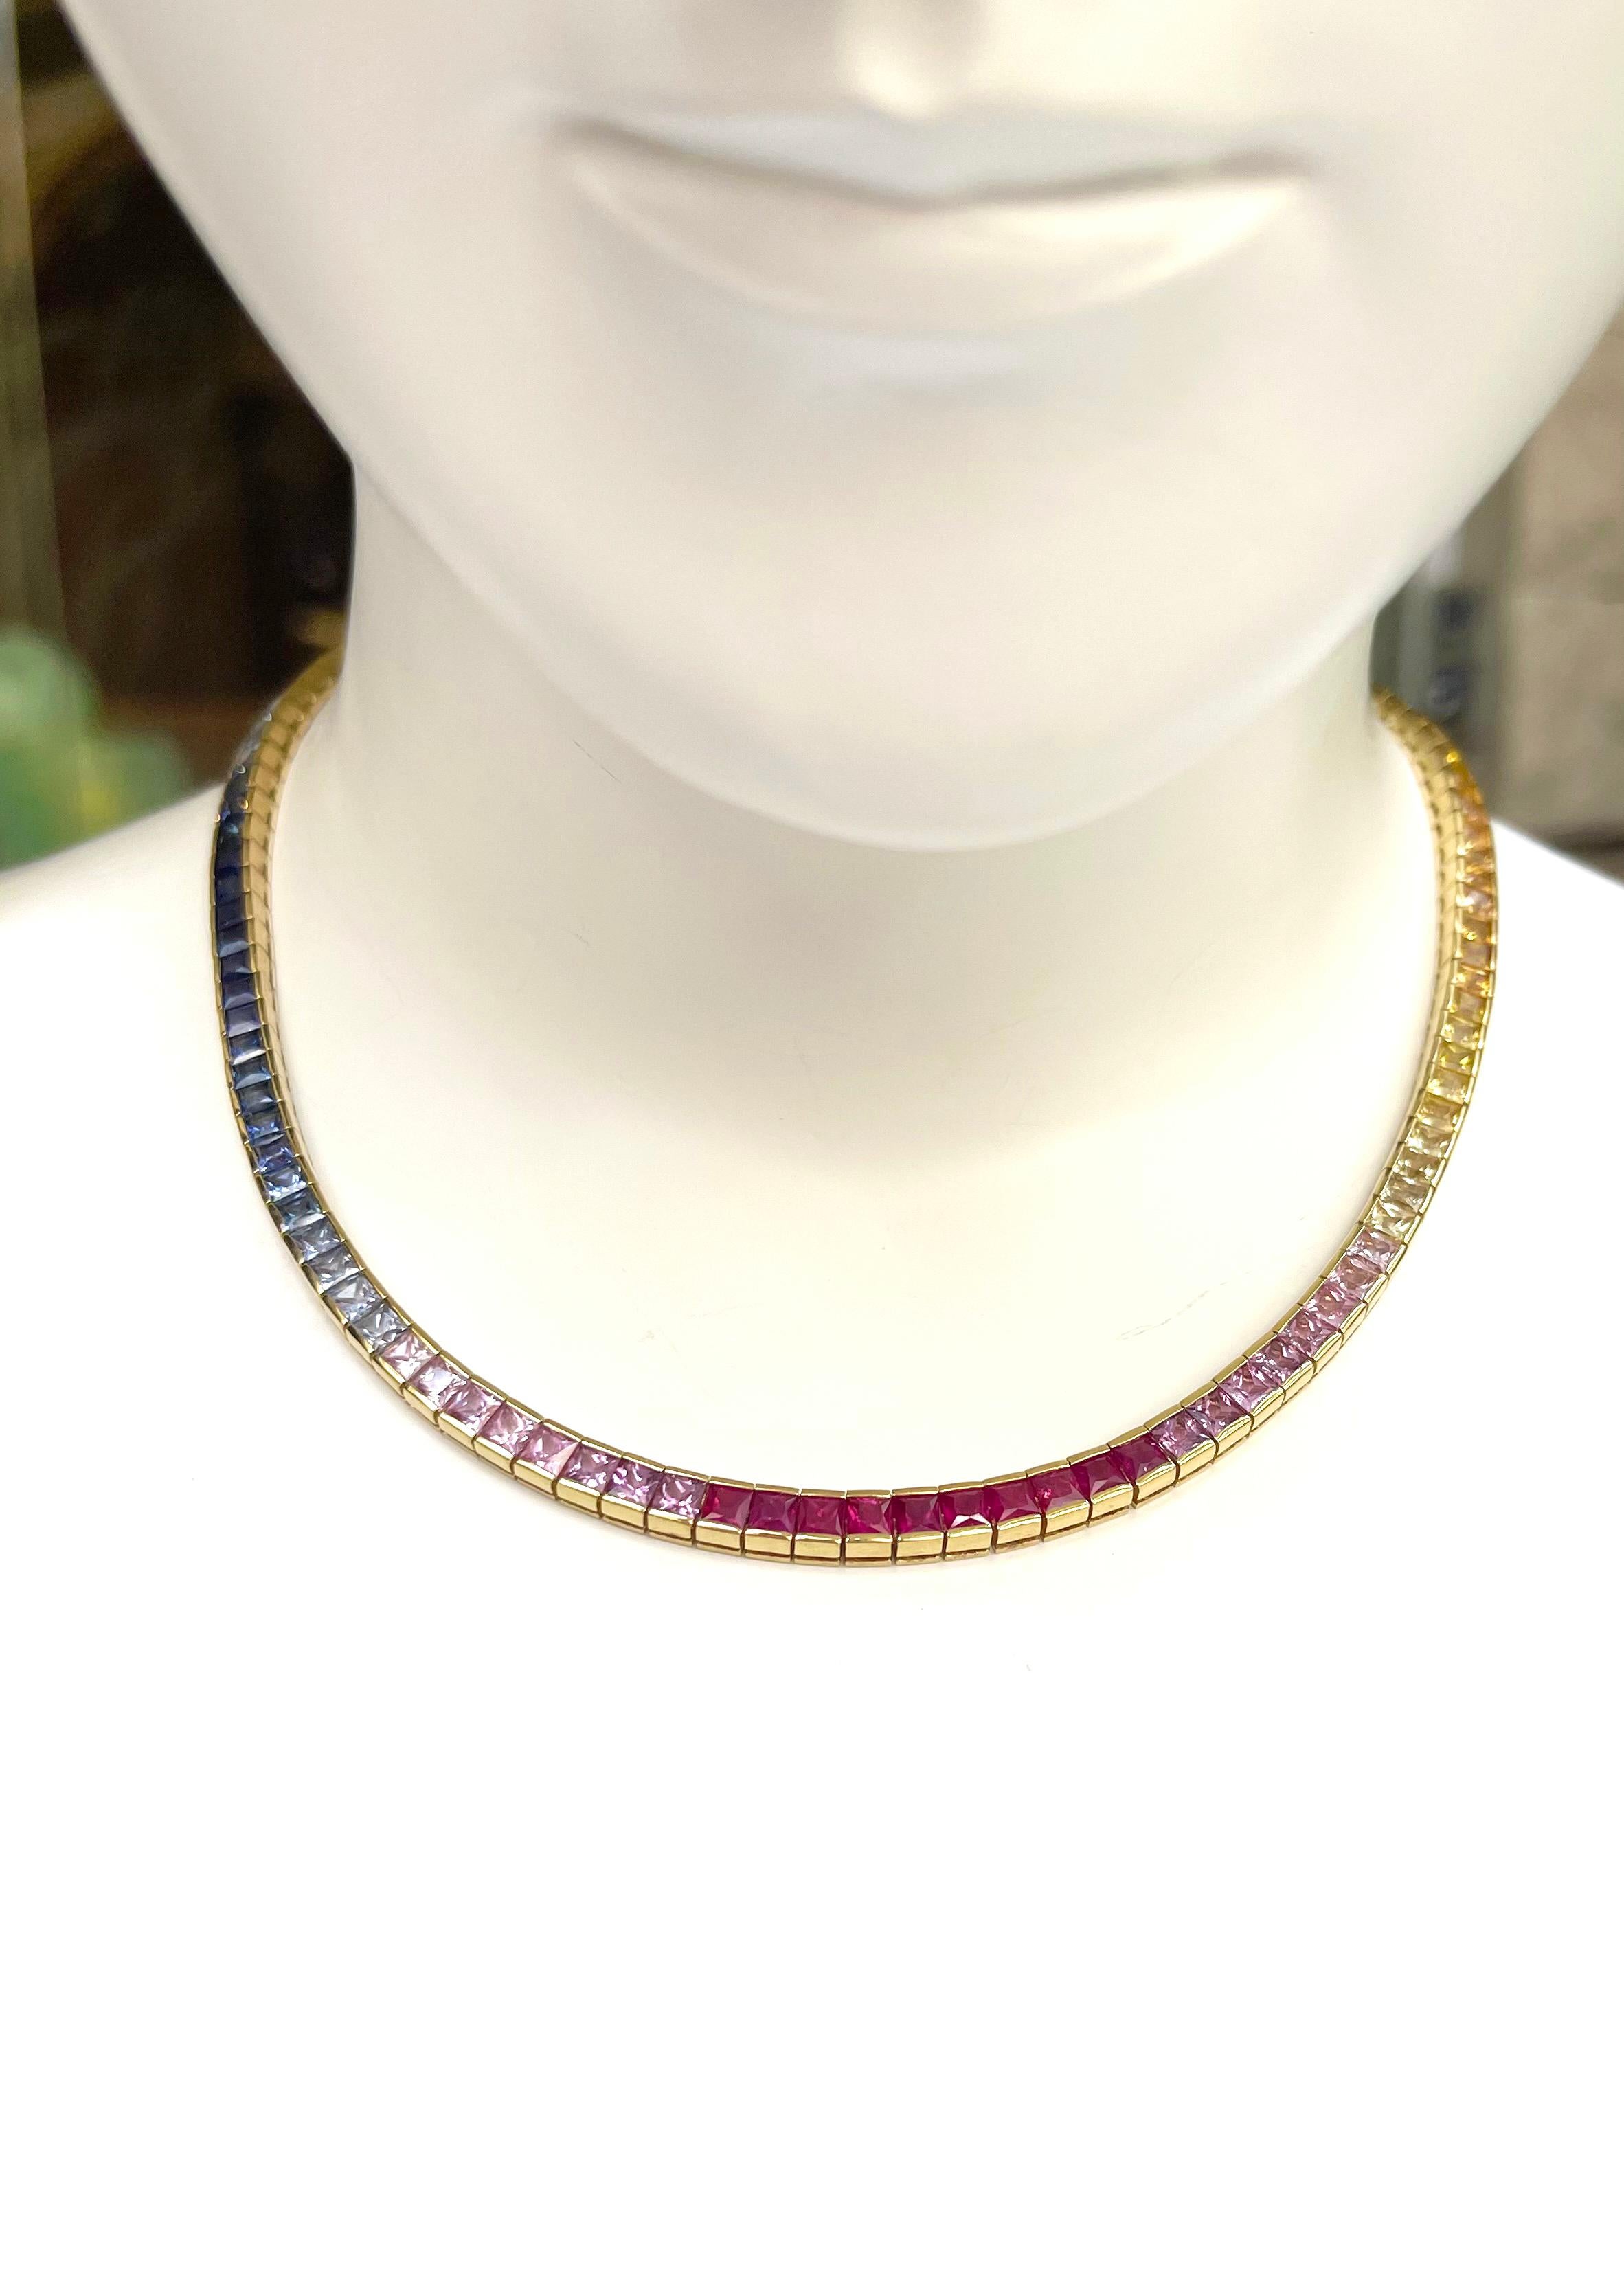 Multi Color Sapphire 34,52 Karat Halskette in 18K Gold Einstellungen gesetzt

Breite: 0,5 cm 
Länge: 41 cm
Gesamtgewicht: 52,86 Gramm

